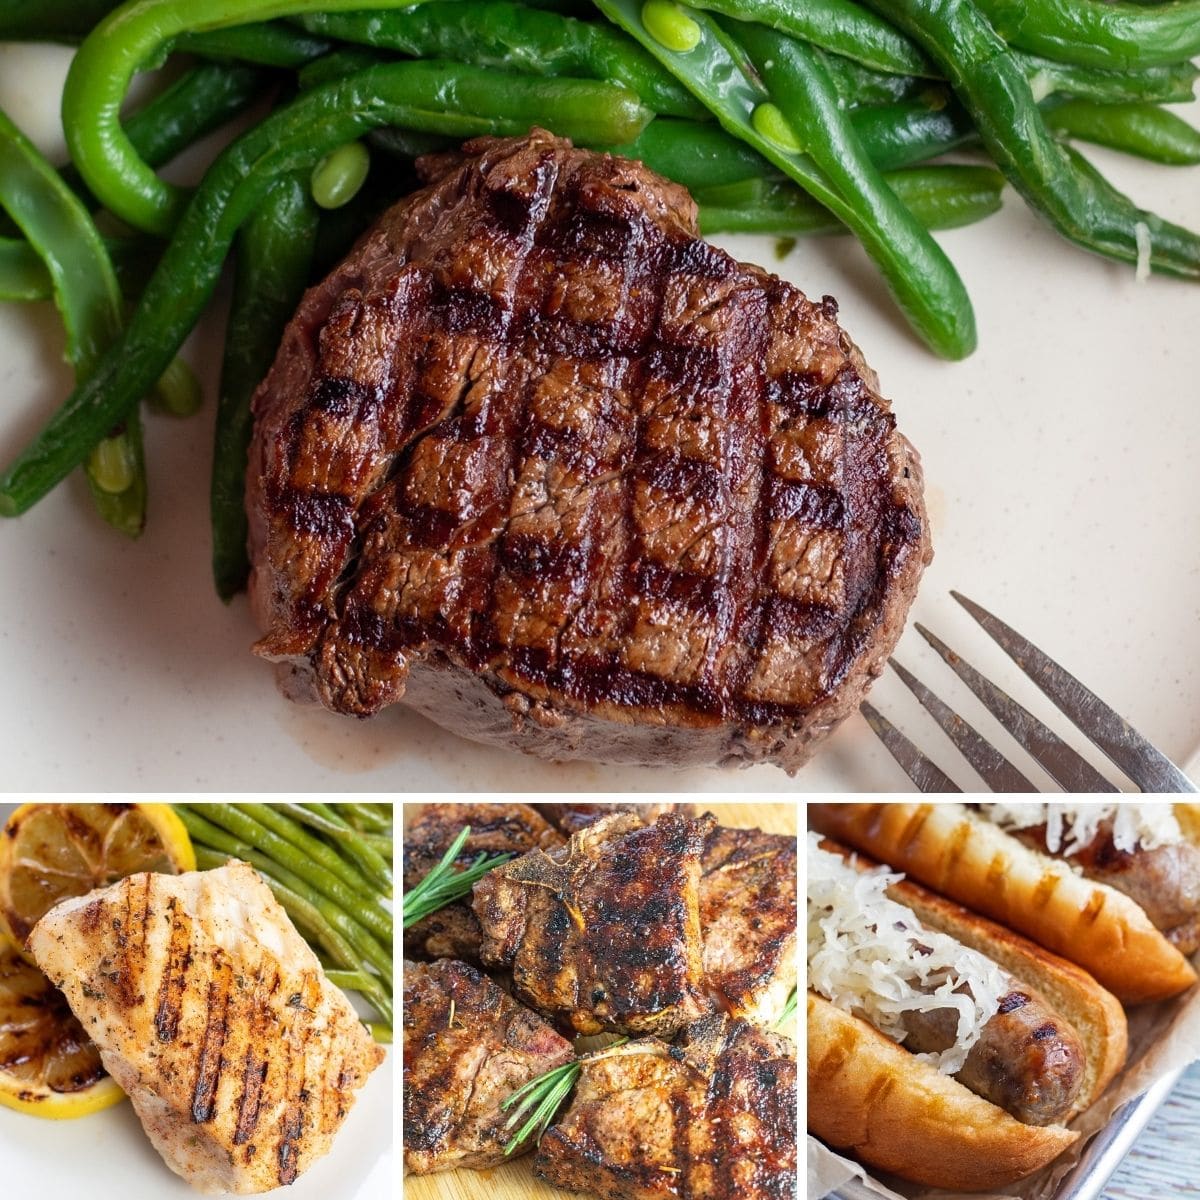 La migliore raccolta di ricette alla griglia con un'immagine collage che mostra 4 ricette grigliate alla perfezione.